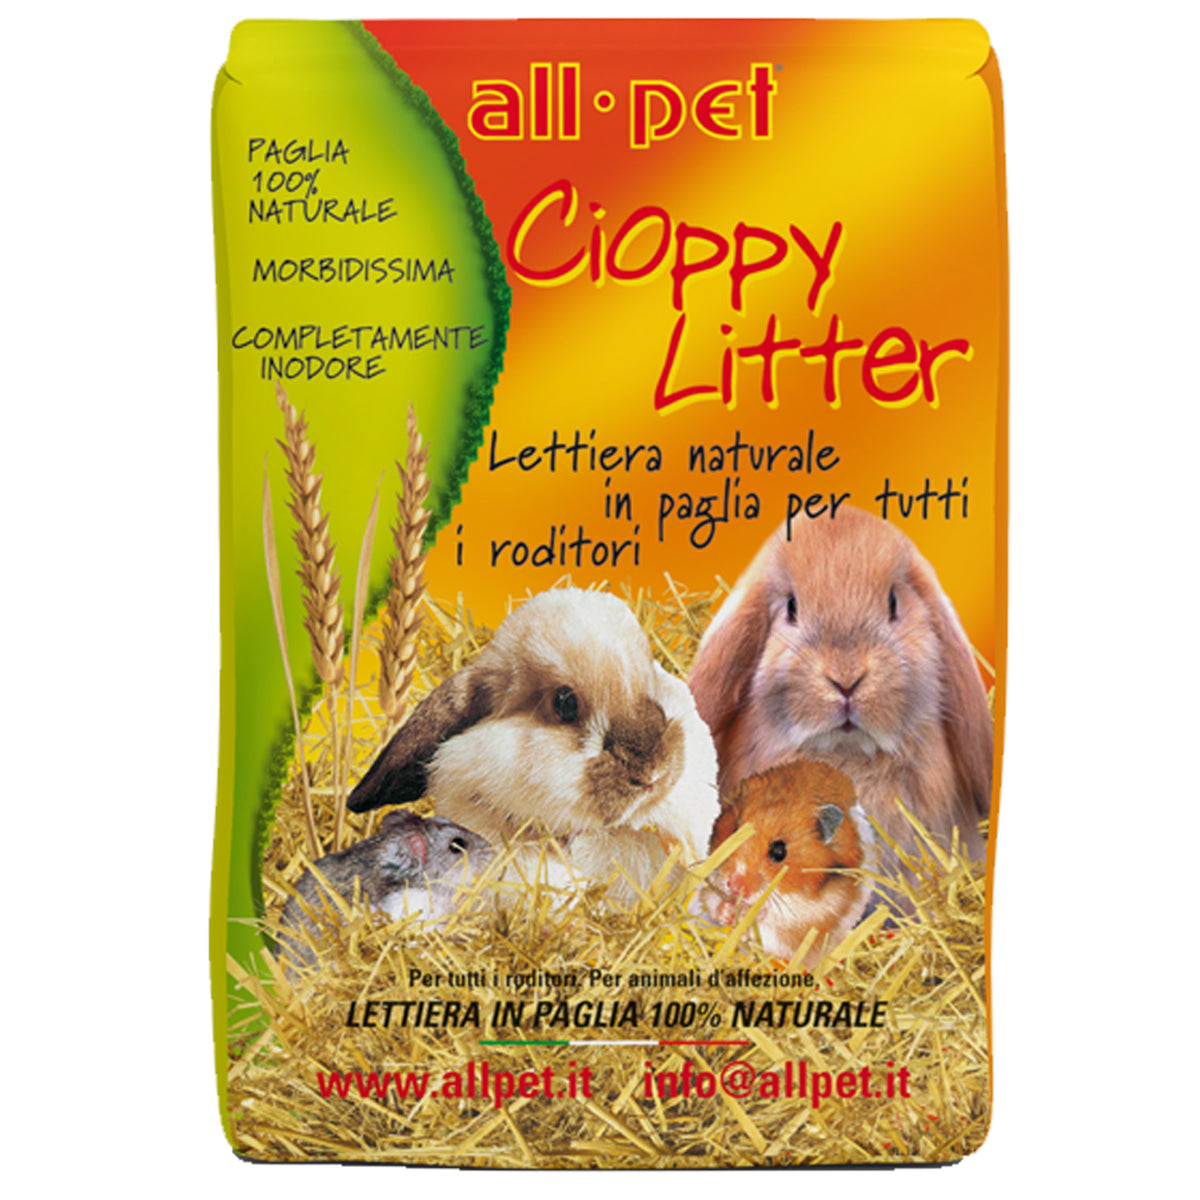 All Pet - Paglia Naturale per Roditori Cioppy Litter 1Kg